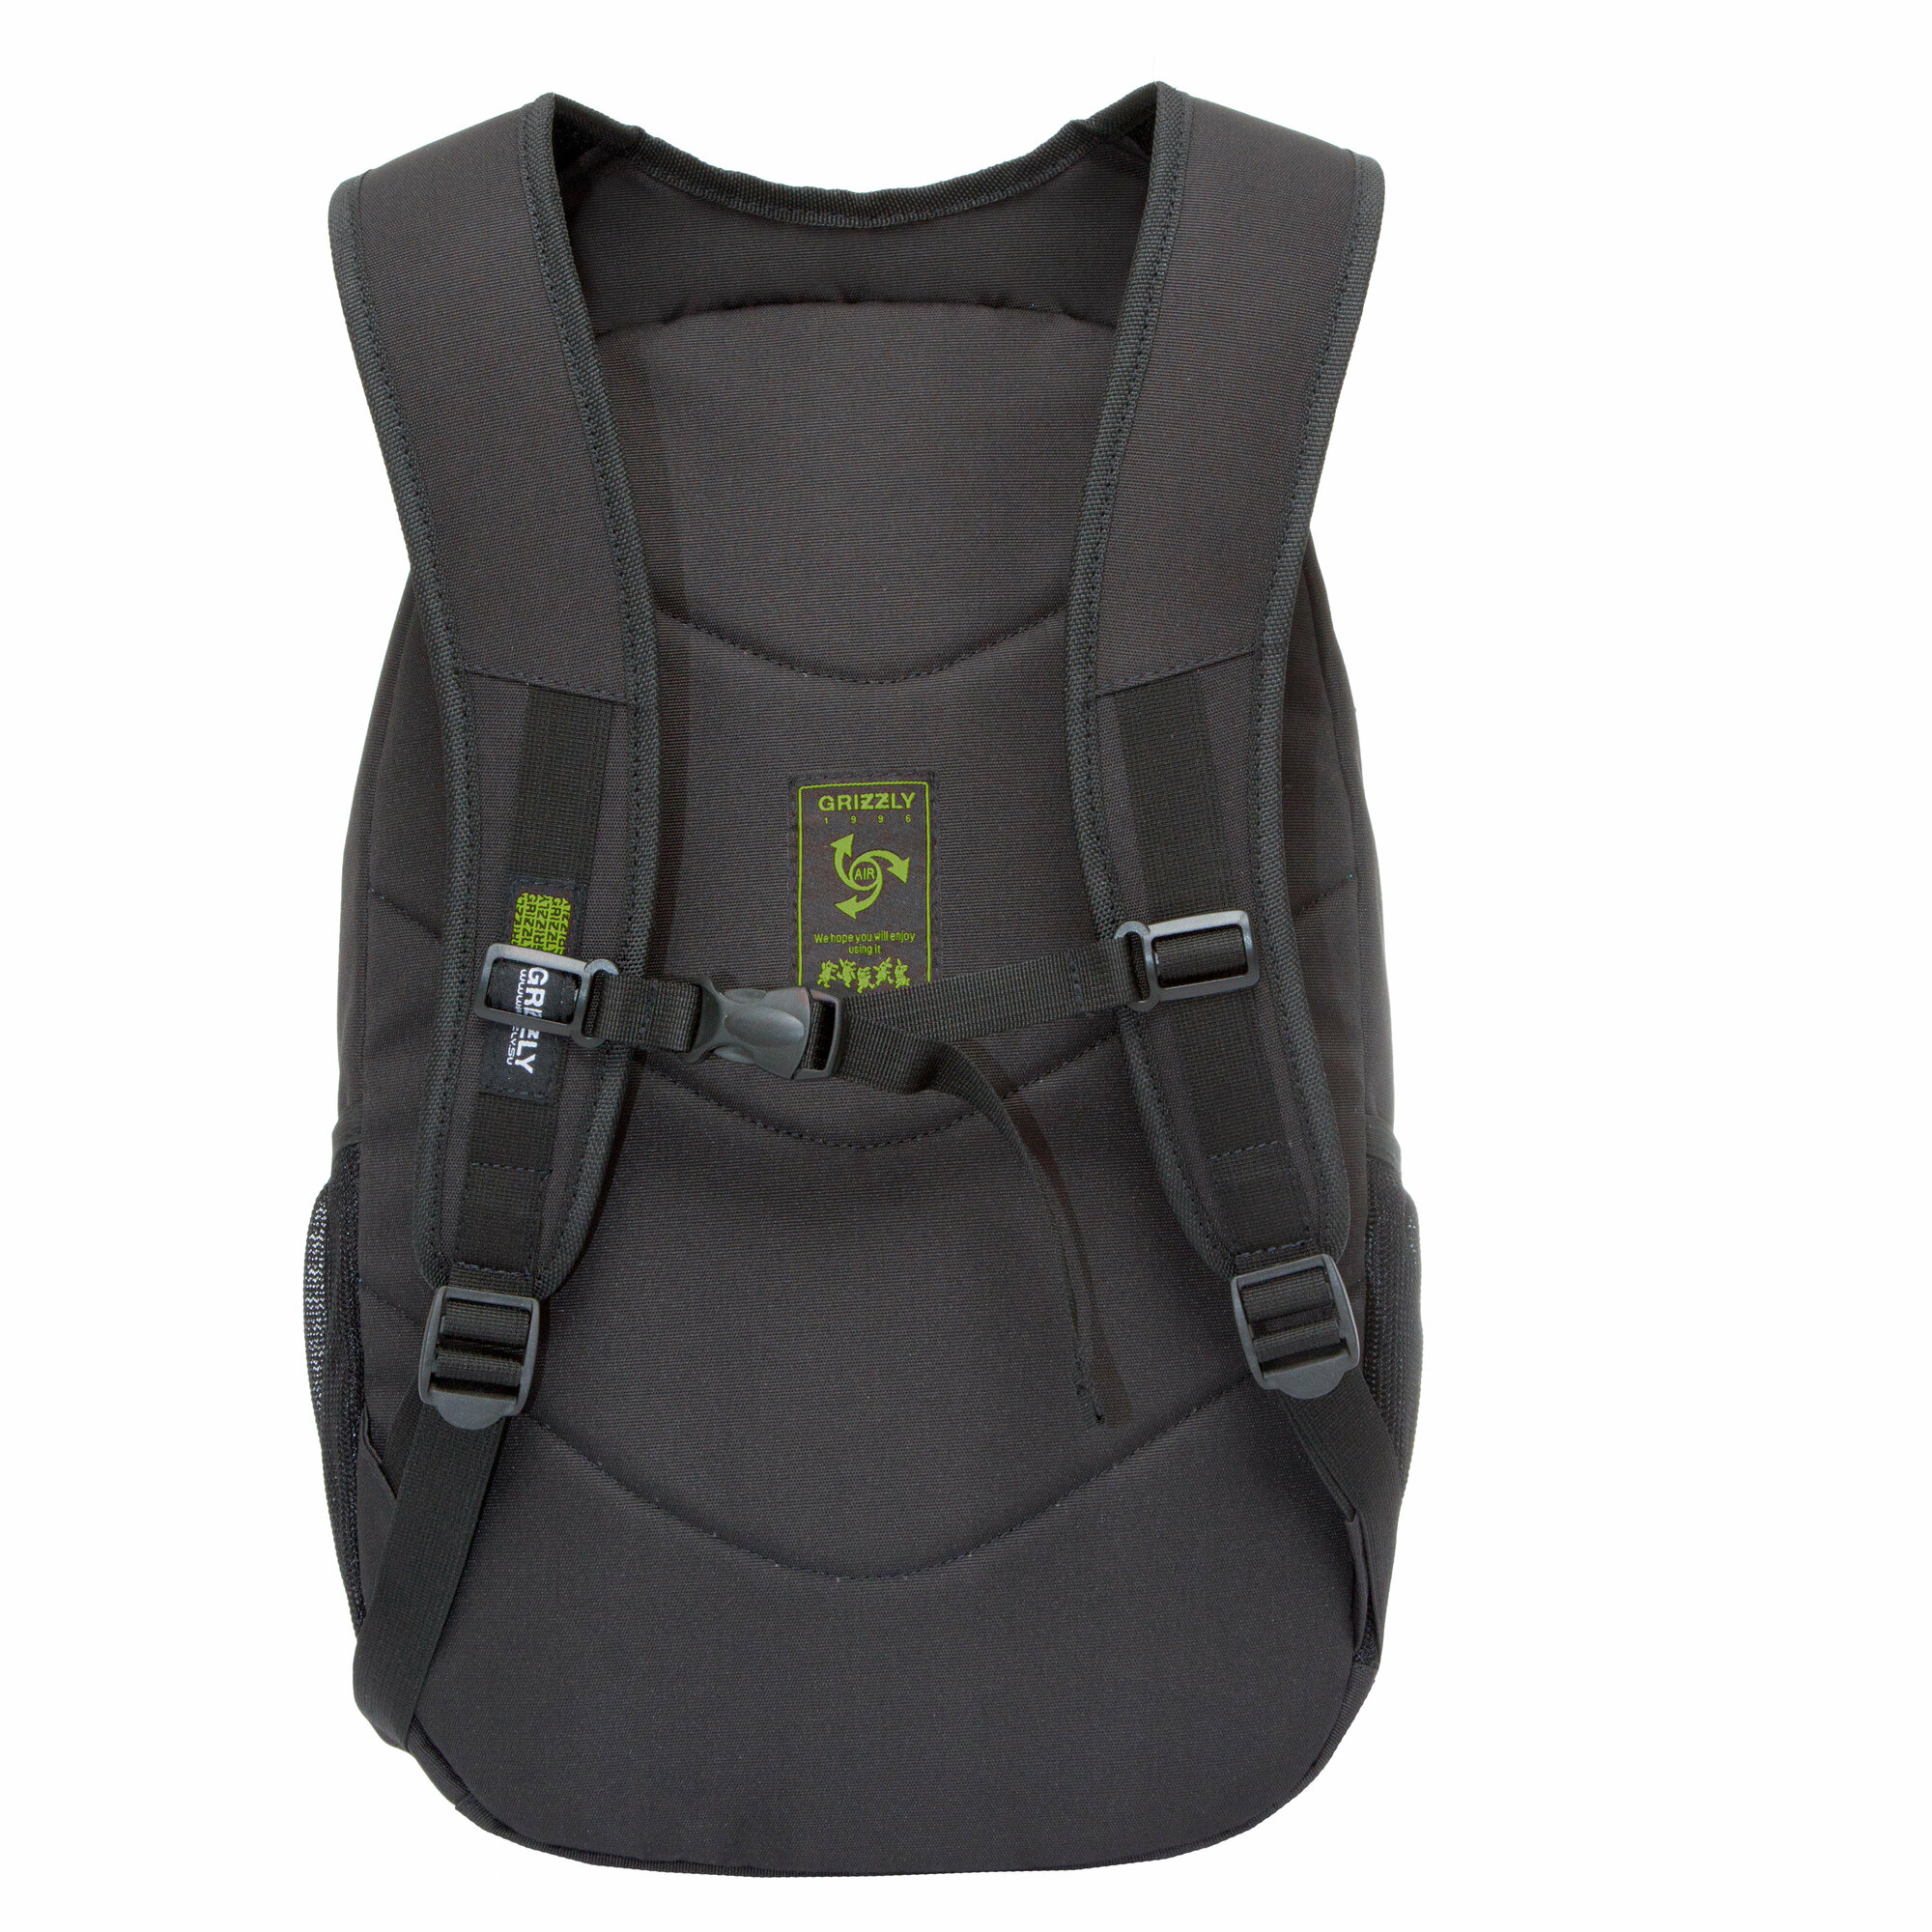 Рюкзак универсальный GRIZZLY с карманом для ноутбука 13" и одним отделением, мужской RQ-003-31/3